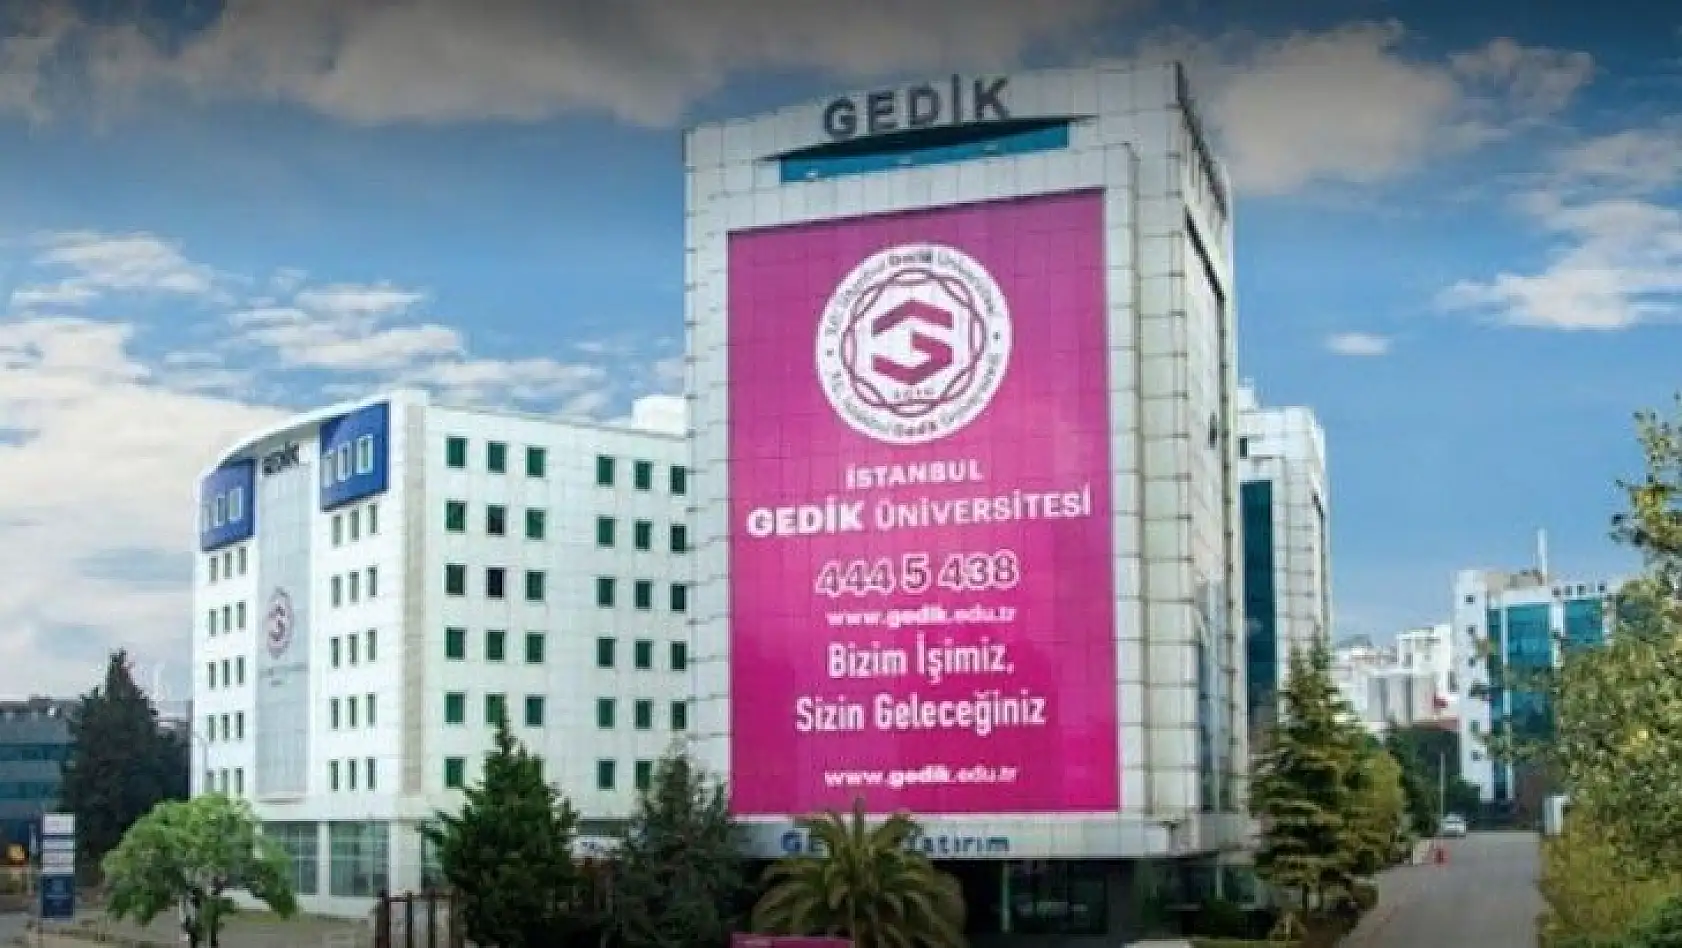 İstanbul Gedik Üniversitesi 17 Öğretim Üyesi alıyor